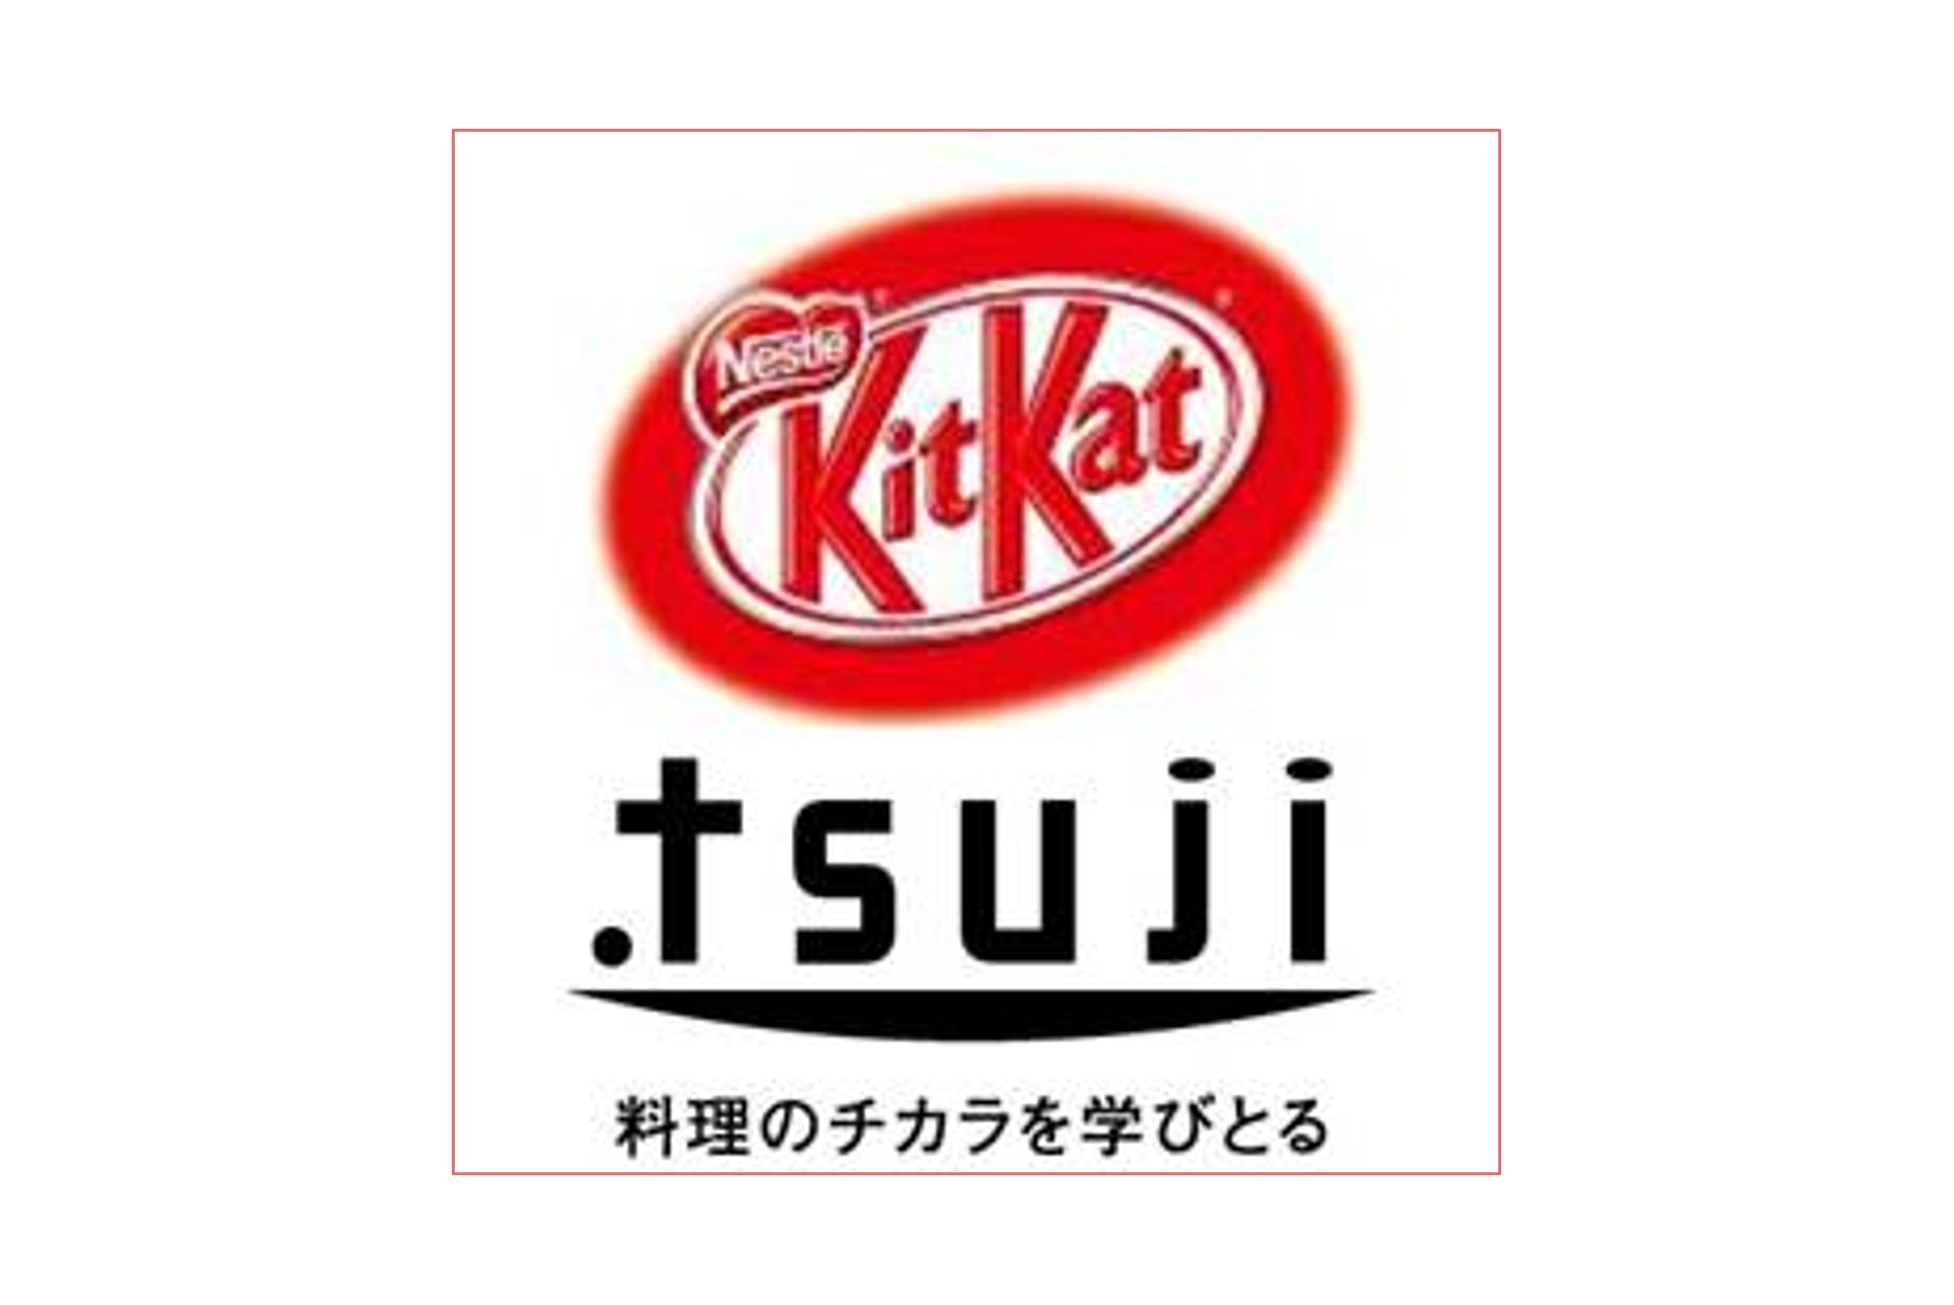 ネスレ「キットカット ショコラトリー」×辻調グループコラボプロジェクト始動